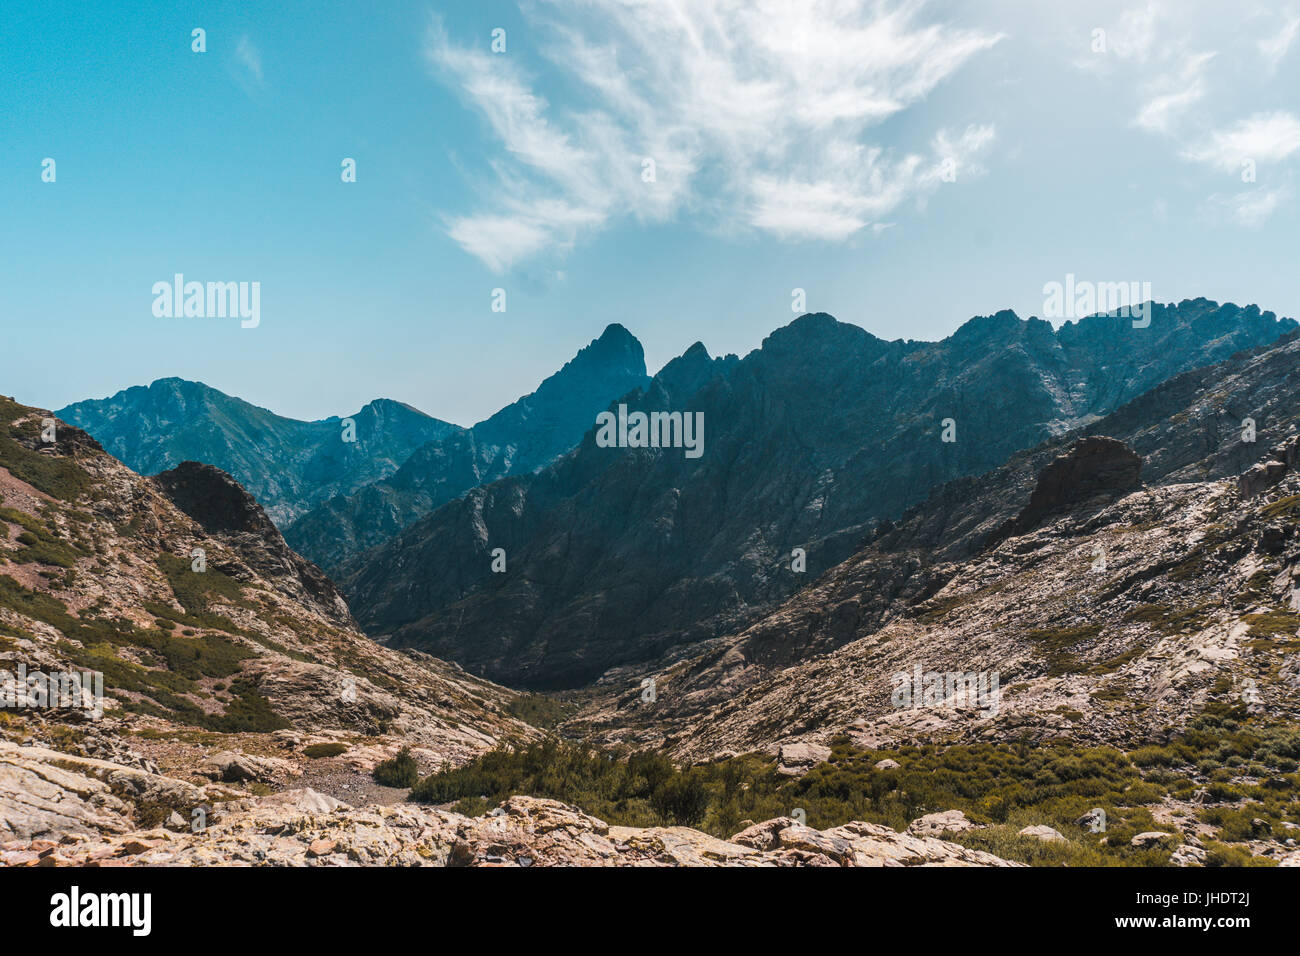 Paysage montagneux prises à partir de la GR20 Sentier de montagne en Corse, France alors que sur une balade / randonnée/ trekking vacances. Banque D'Images